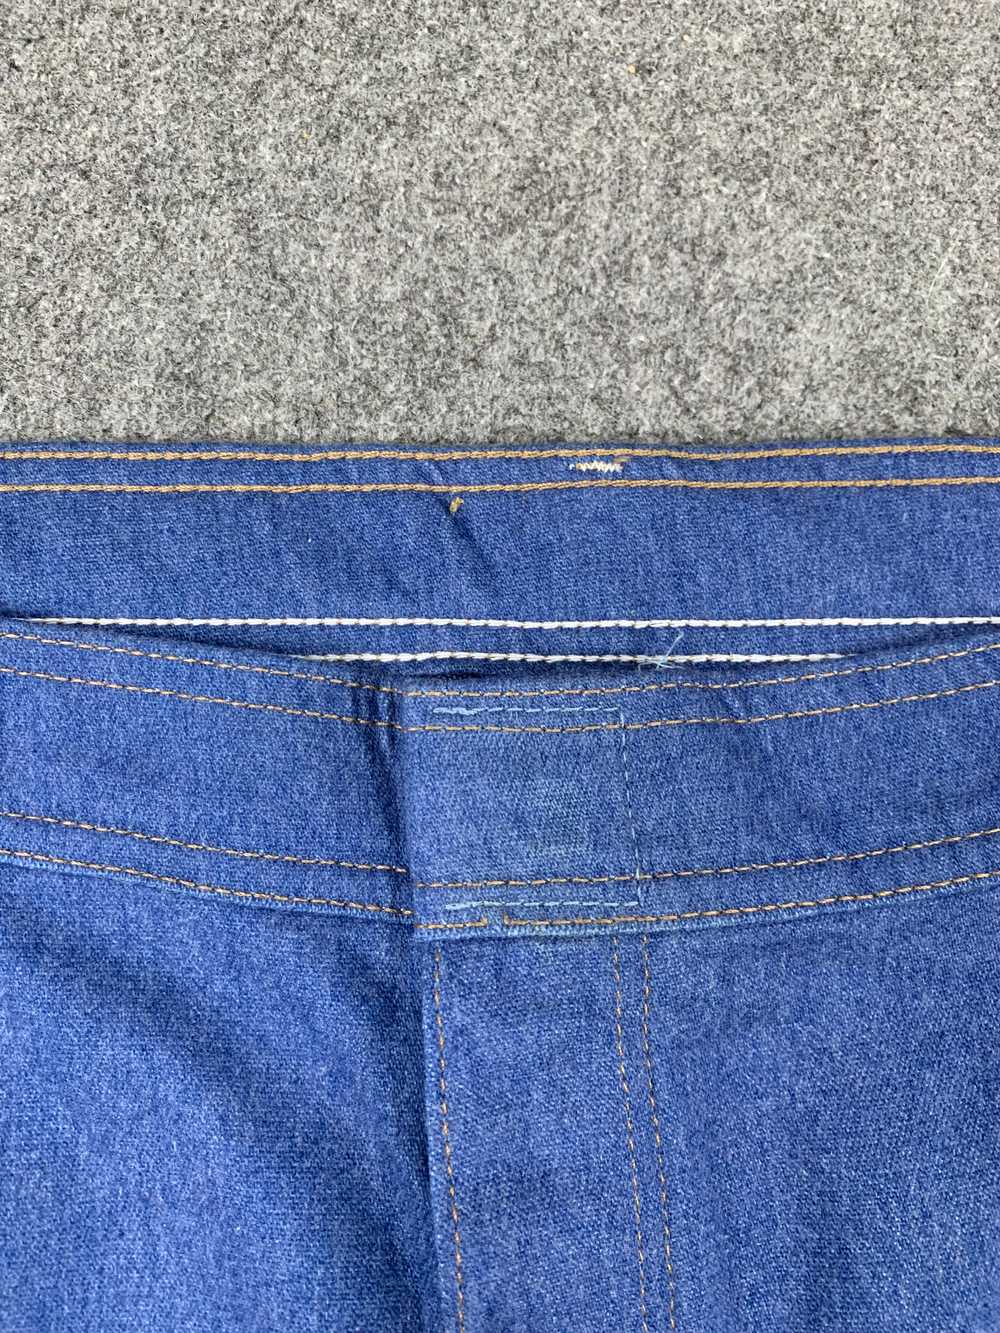 Vintage - Vintage Wrangler Blue Denim Jeans - image 6